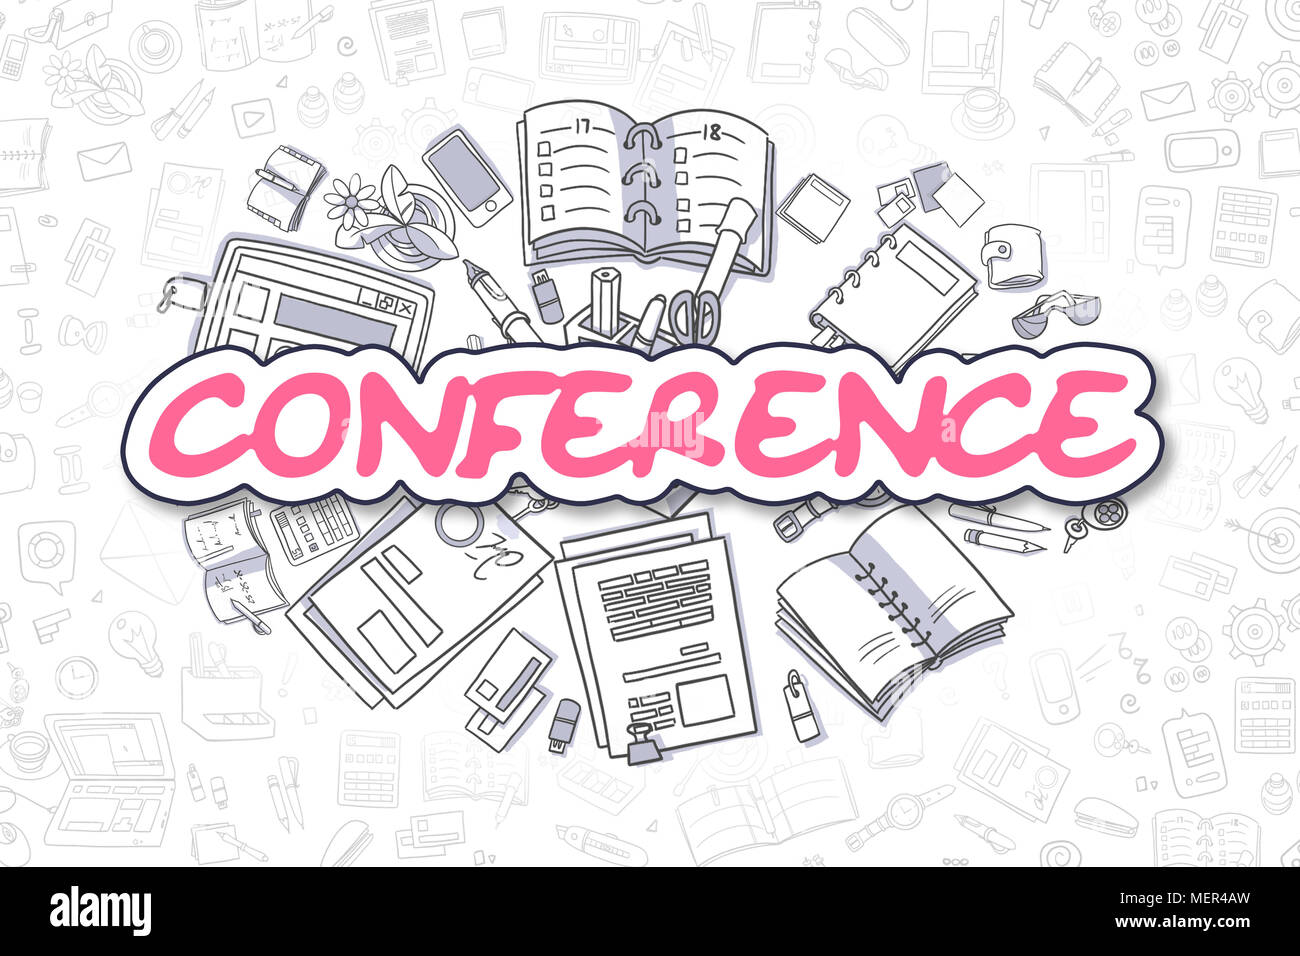 Conferenza - Doodle Magenta Word. Il concetto di business. Foto Stock